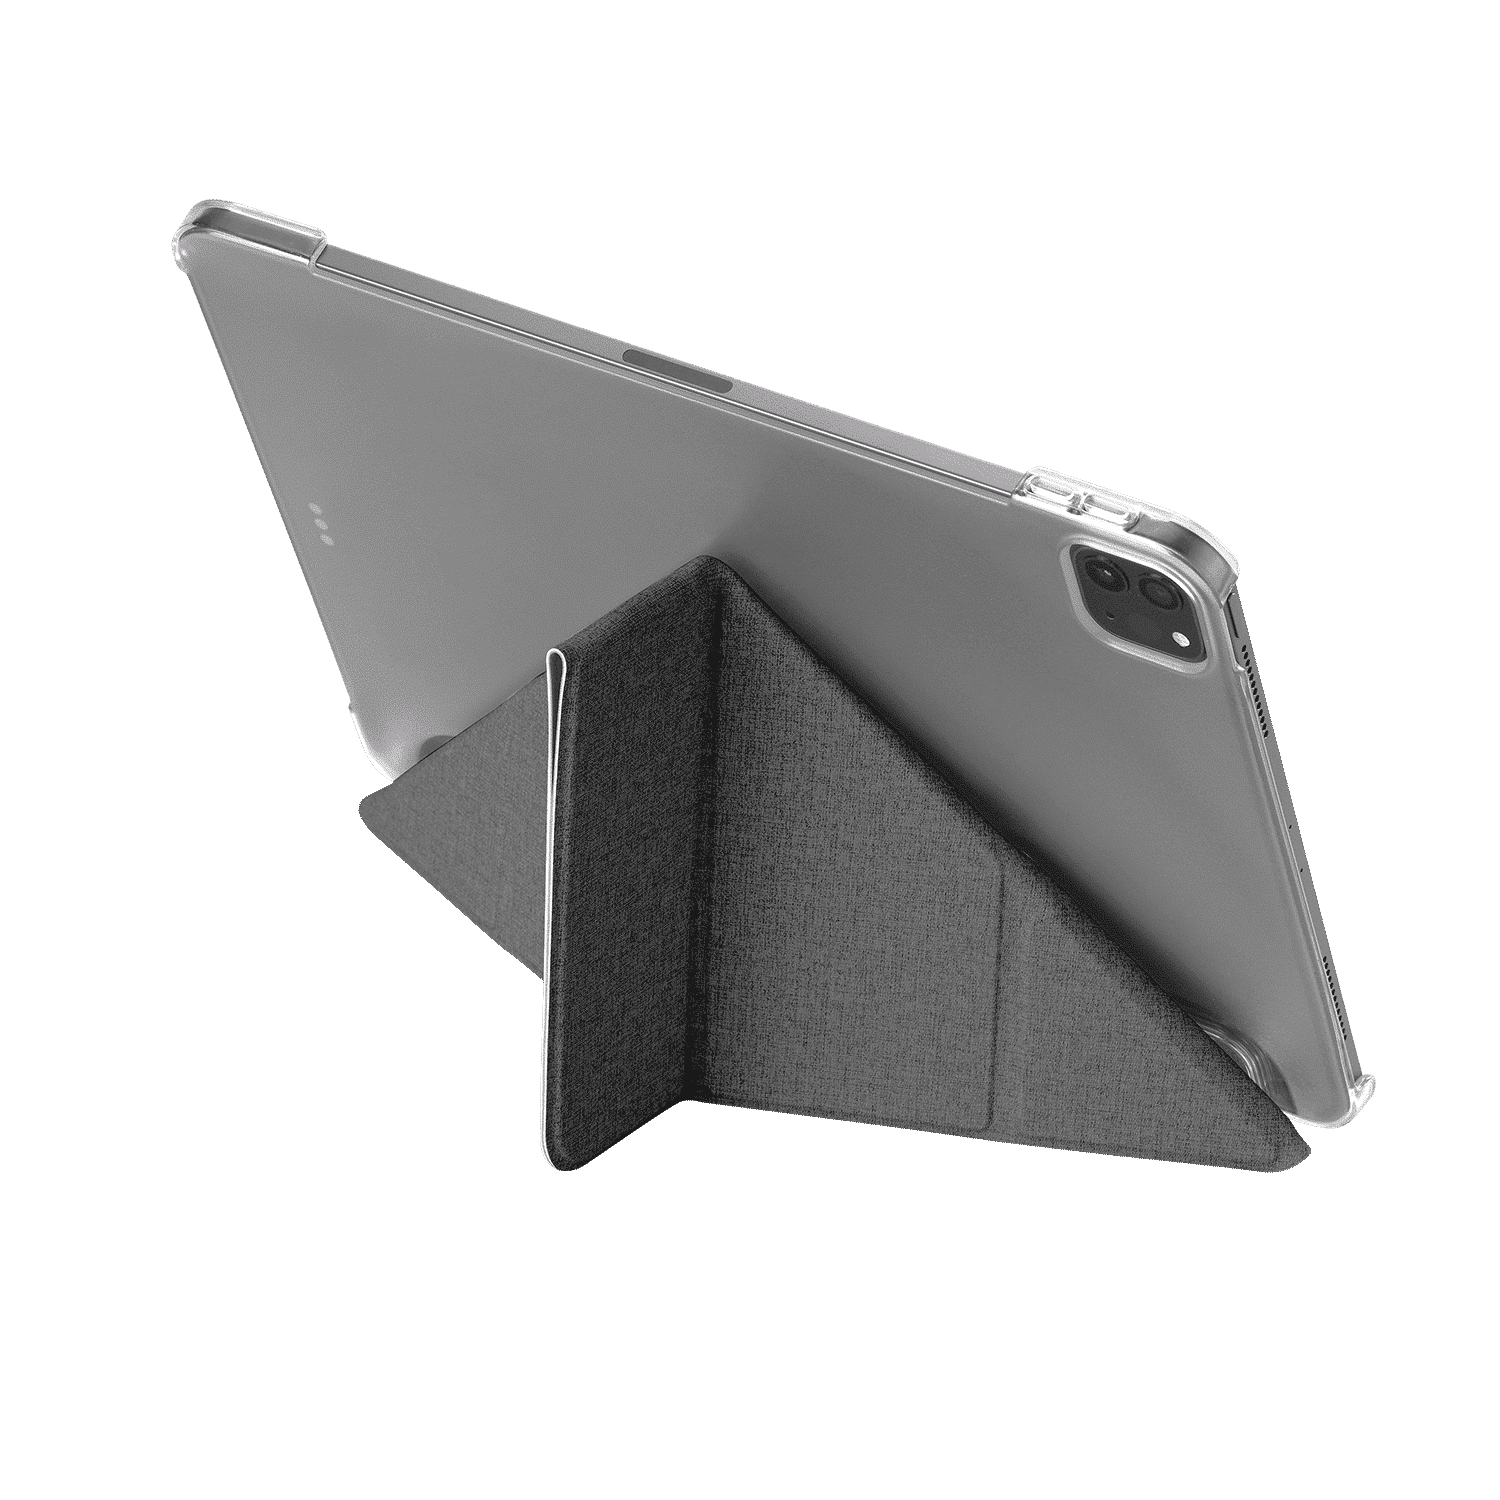 เคส Momax รุ่น Flip Cover Case - iPad Pro 11" (4th Gen 2022/3rd Gen 2021) - Dark Grey